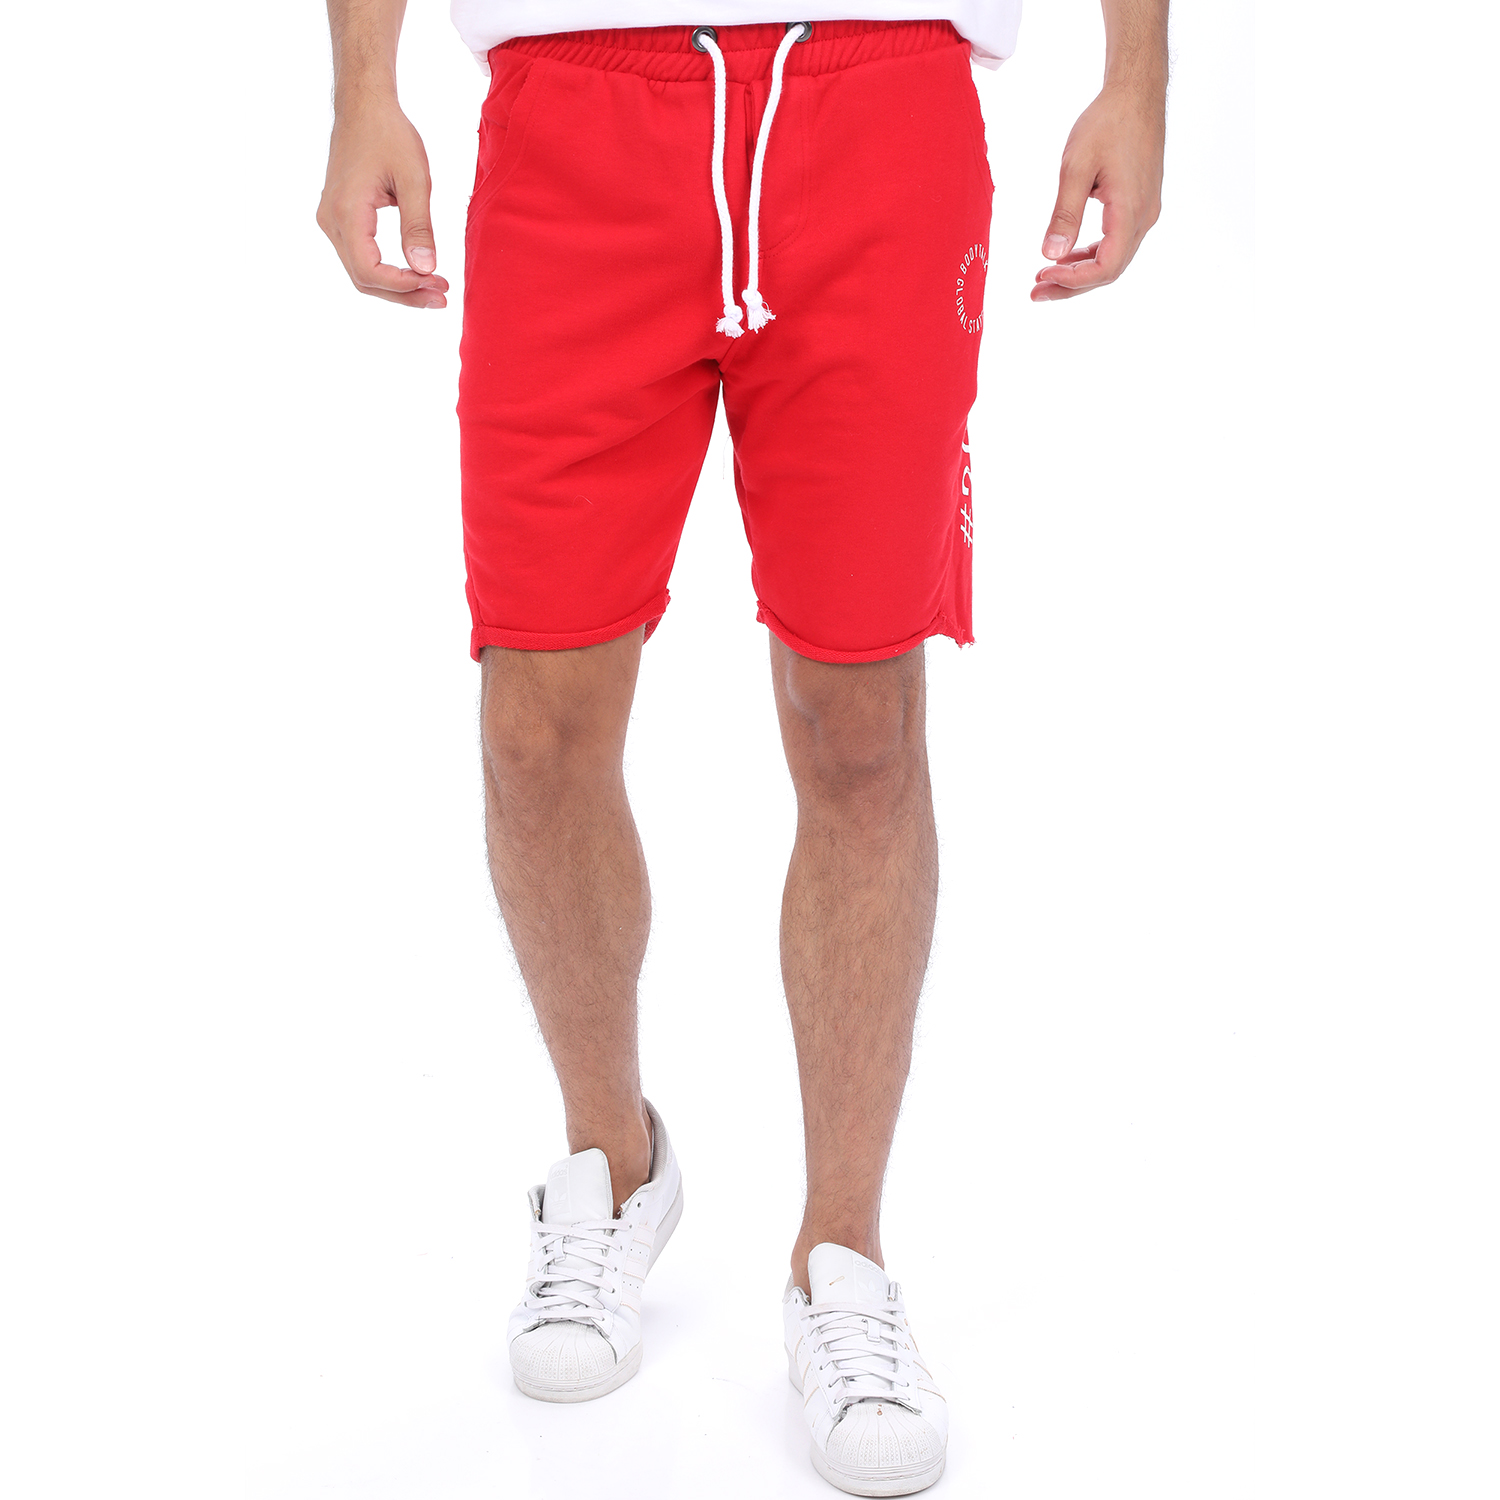 Ανδρικά/Ρούχα/Σορτς-Βερμούδες/Αθλητικά BODYTALK - Ανδρική βερμούδα BODYTALK STATEMENT κόκκινη